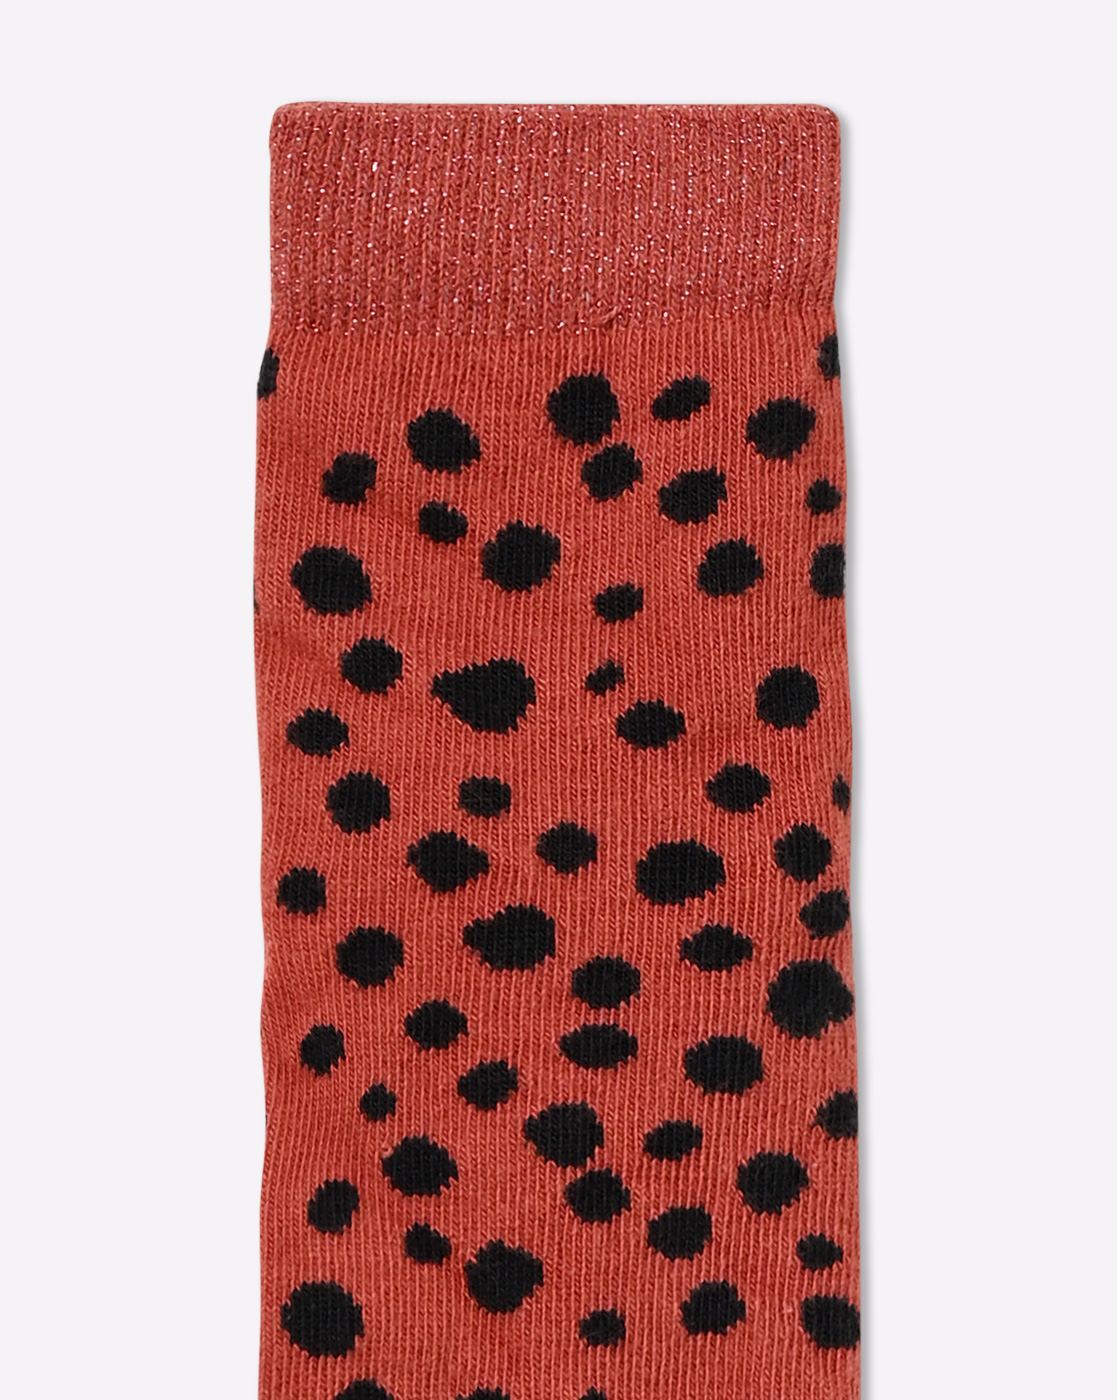 Buy Multicoloured Socks & Stockings for Girls by Marks & Spencer Online